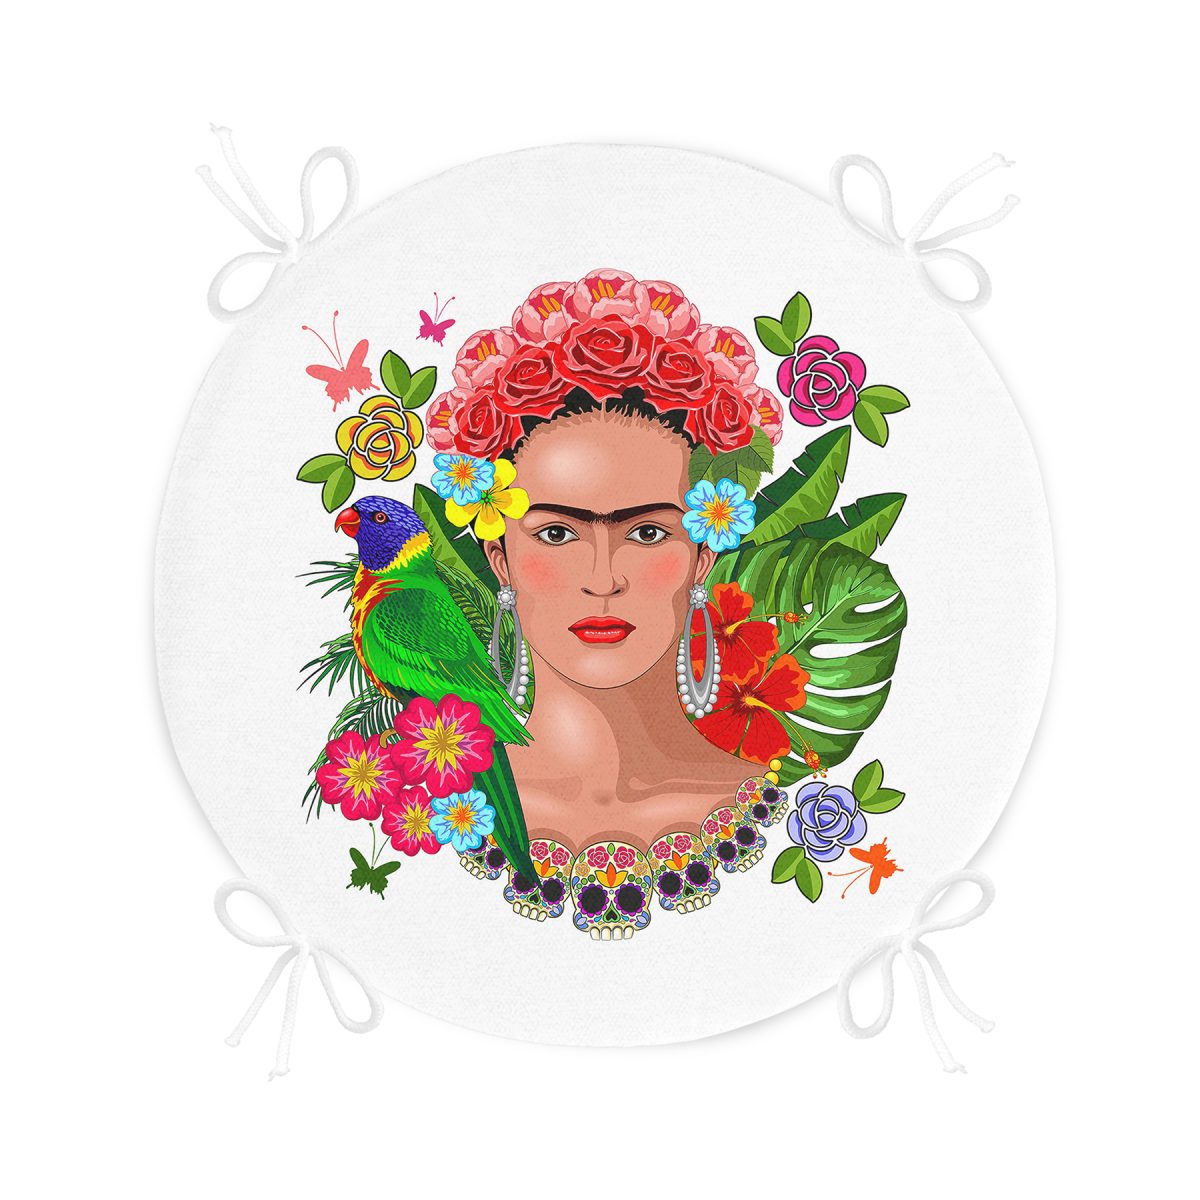 Özel Tasarım Frida Kahlo Tasarımlı Yuvarlak Fermuarlı Sandalye Minderi Realhomes